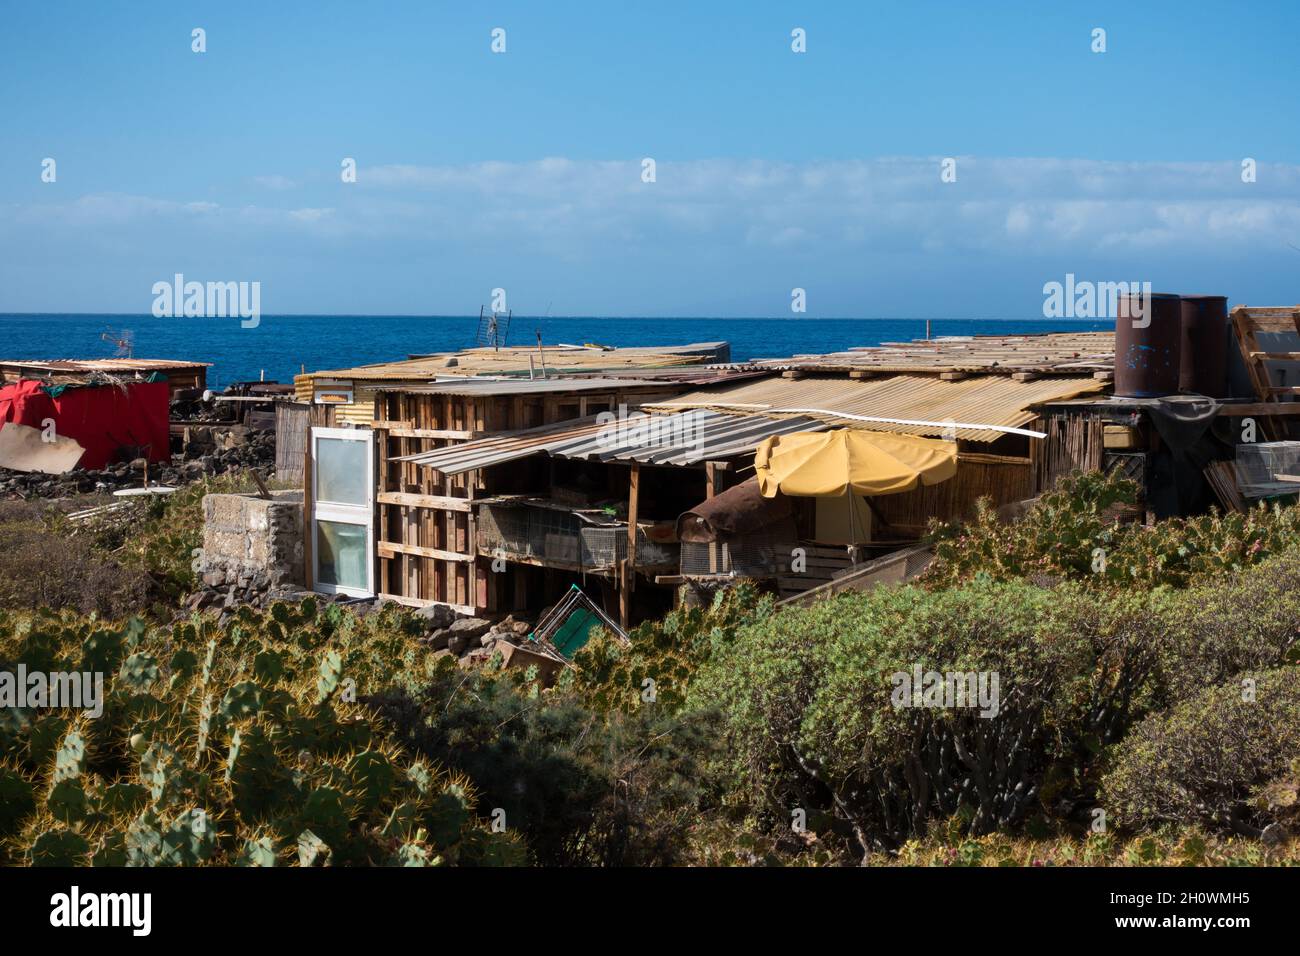 Cabañas comunales hippy construidas ilegalmente en el Parque Nacional La Caleta, Tenerife, en 2019 Foto de stock